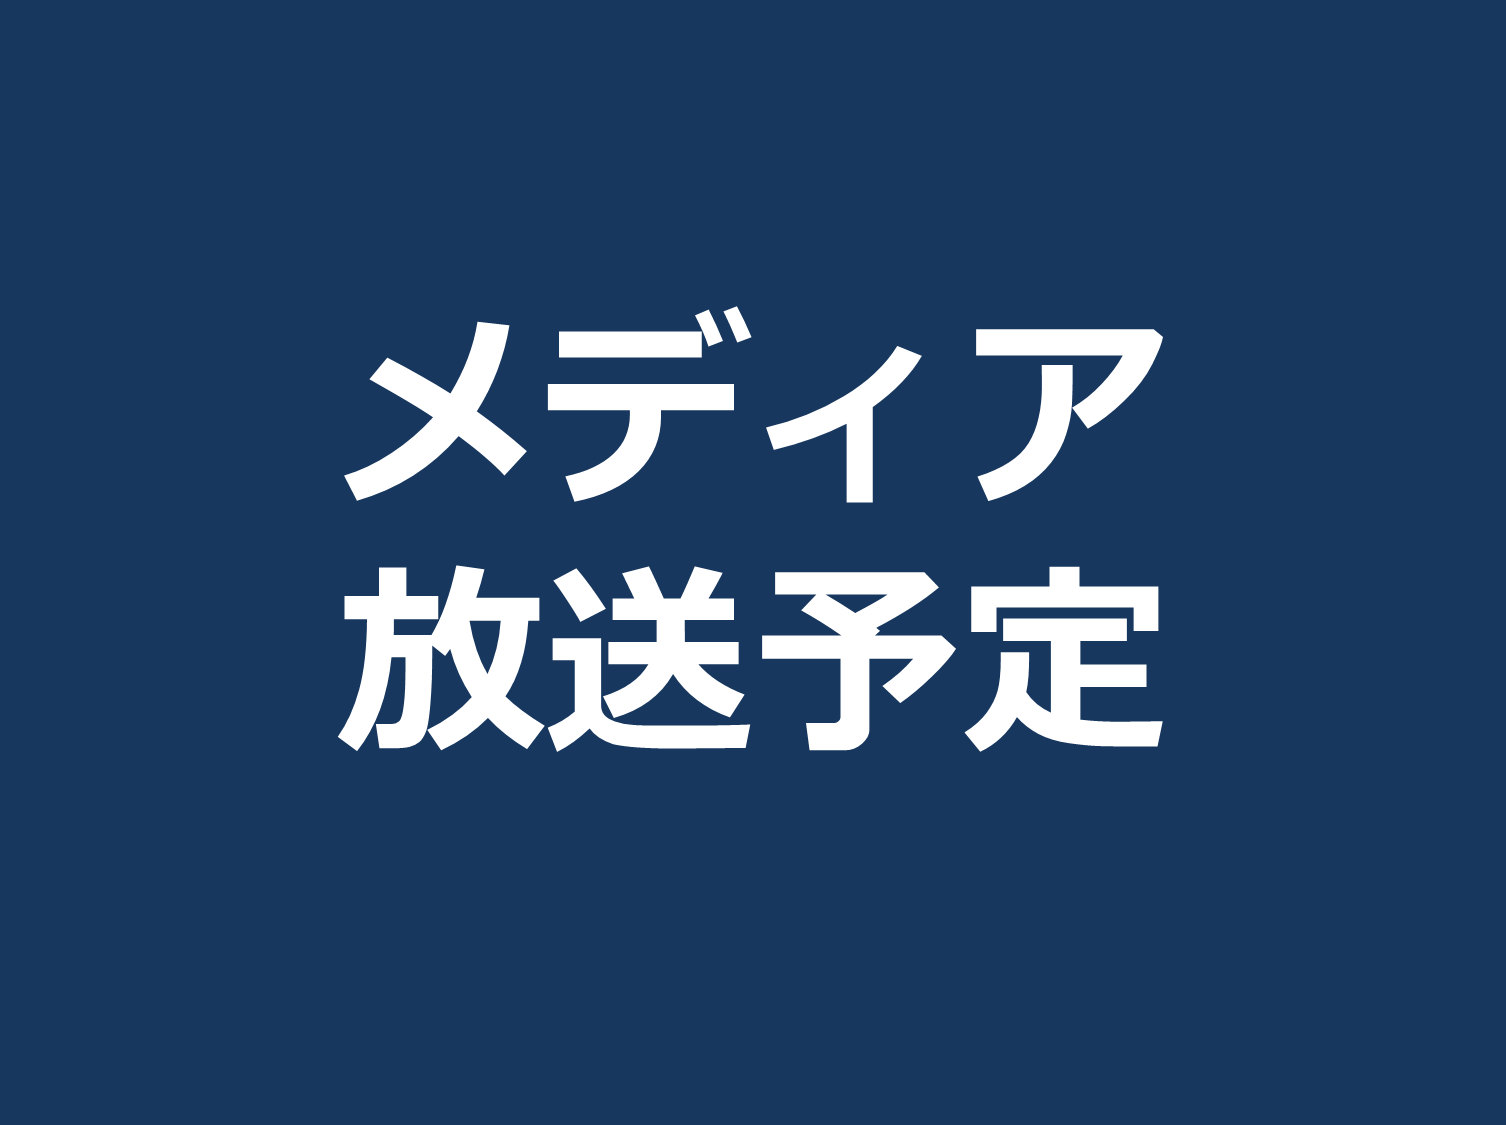 1/25ニッポン放送「ようこそ横浜」、1/29、2/5文化放送「横浜流儀～ハマスタイル～」